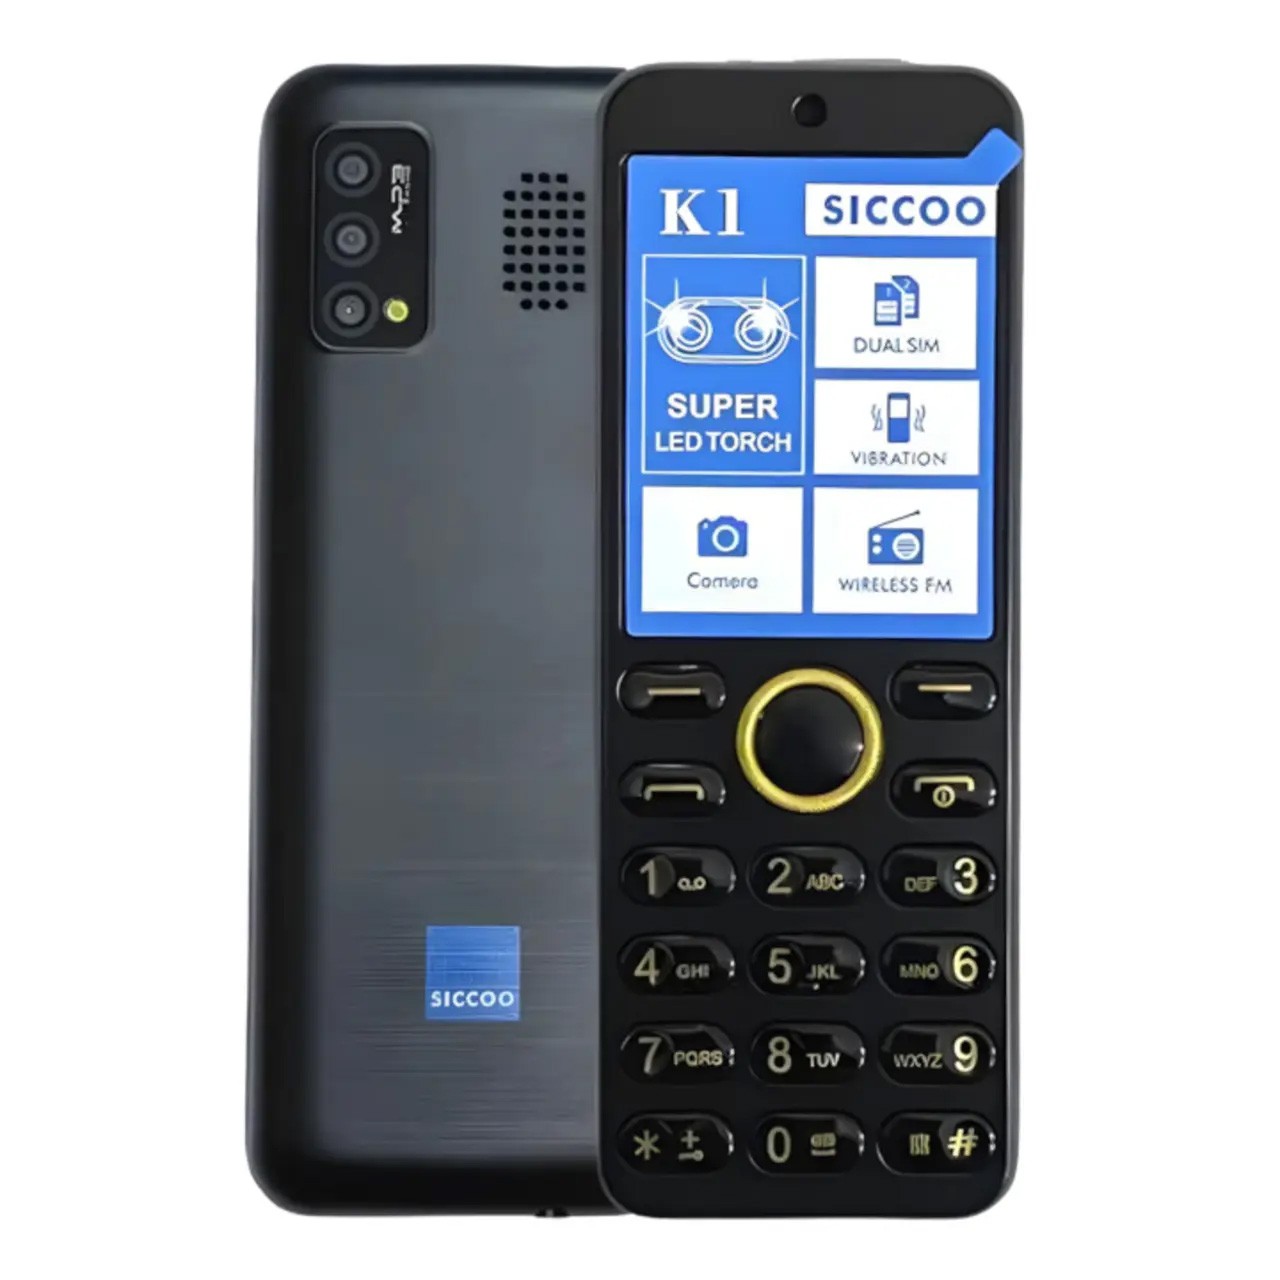 گوشی موبایل سیکو SICCOO K1 دو سیم کارت ظرفیت 32 مگابایت و رم 32 مگابایت